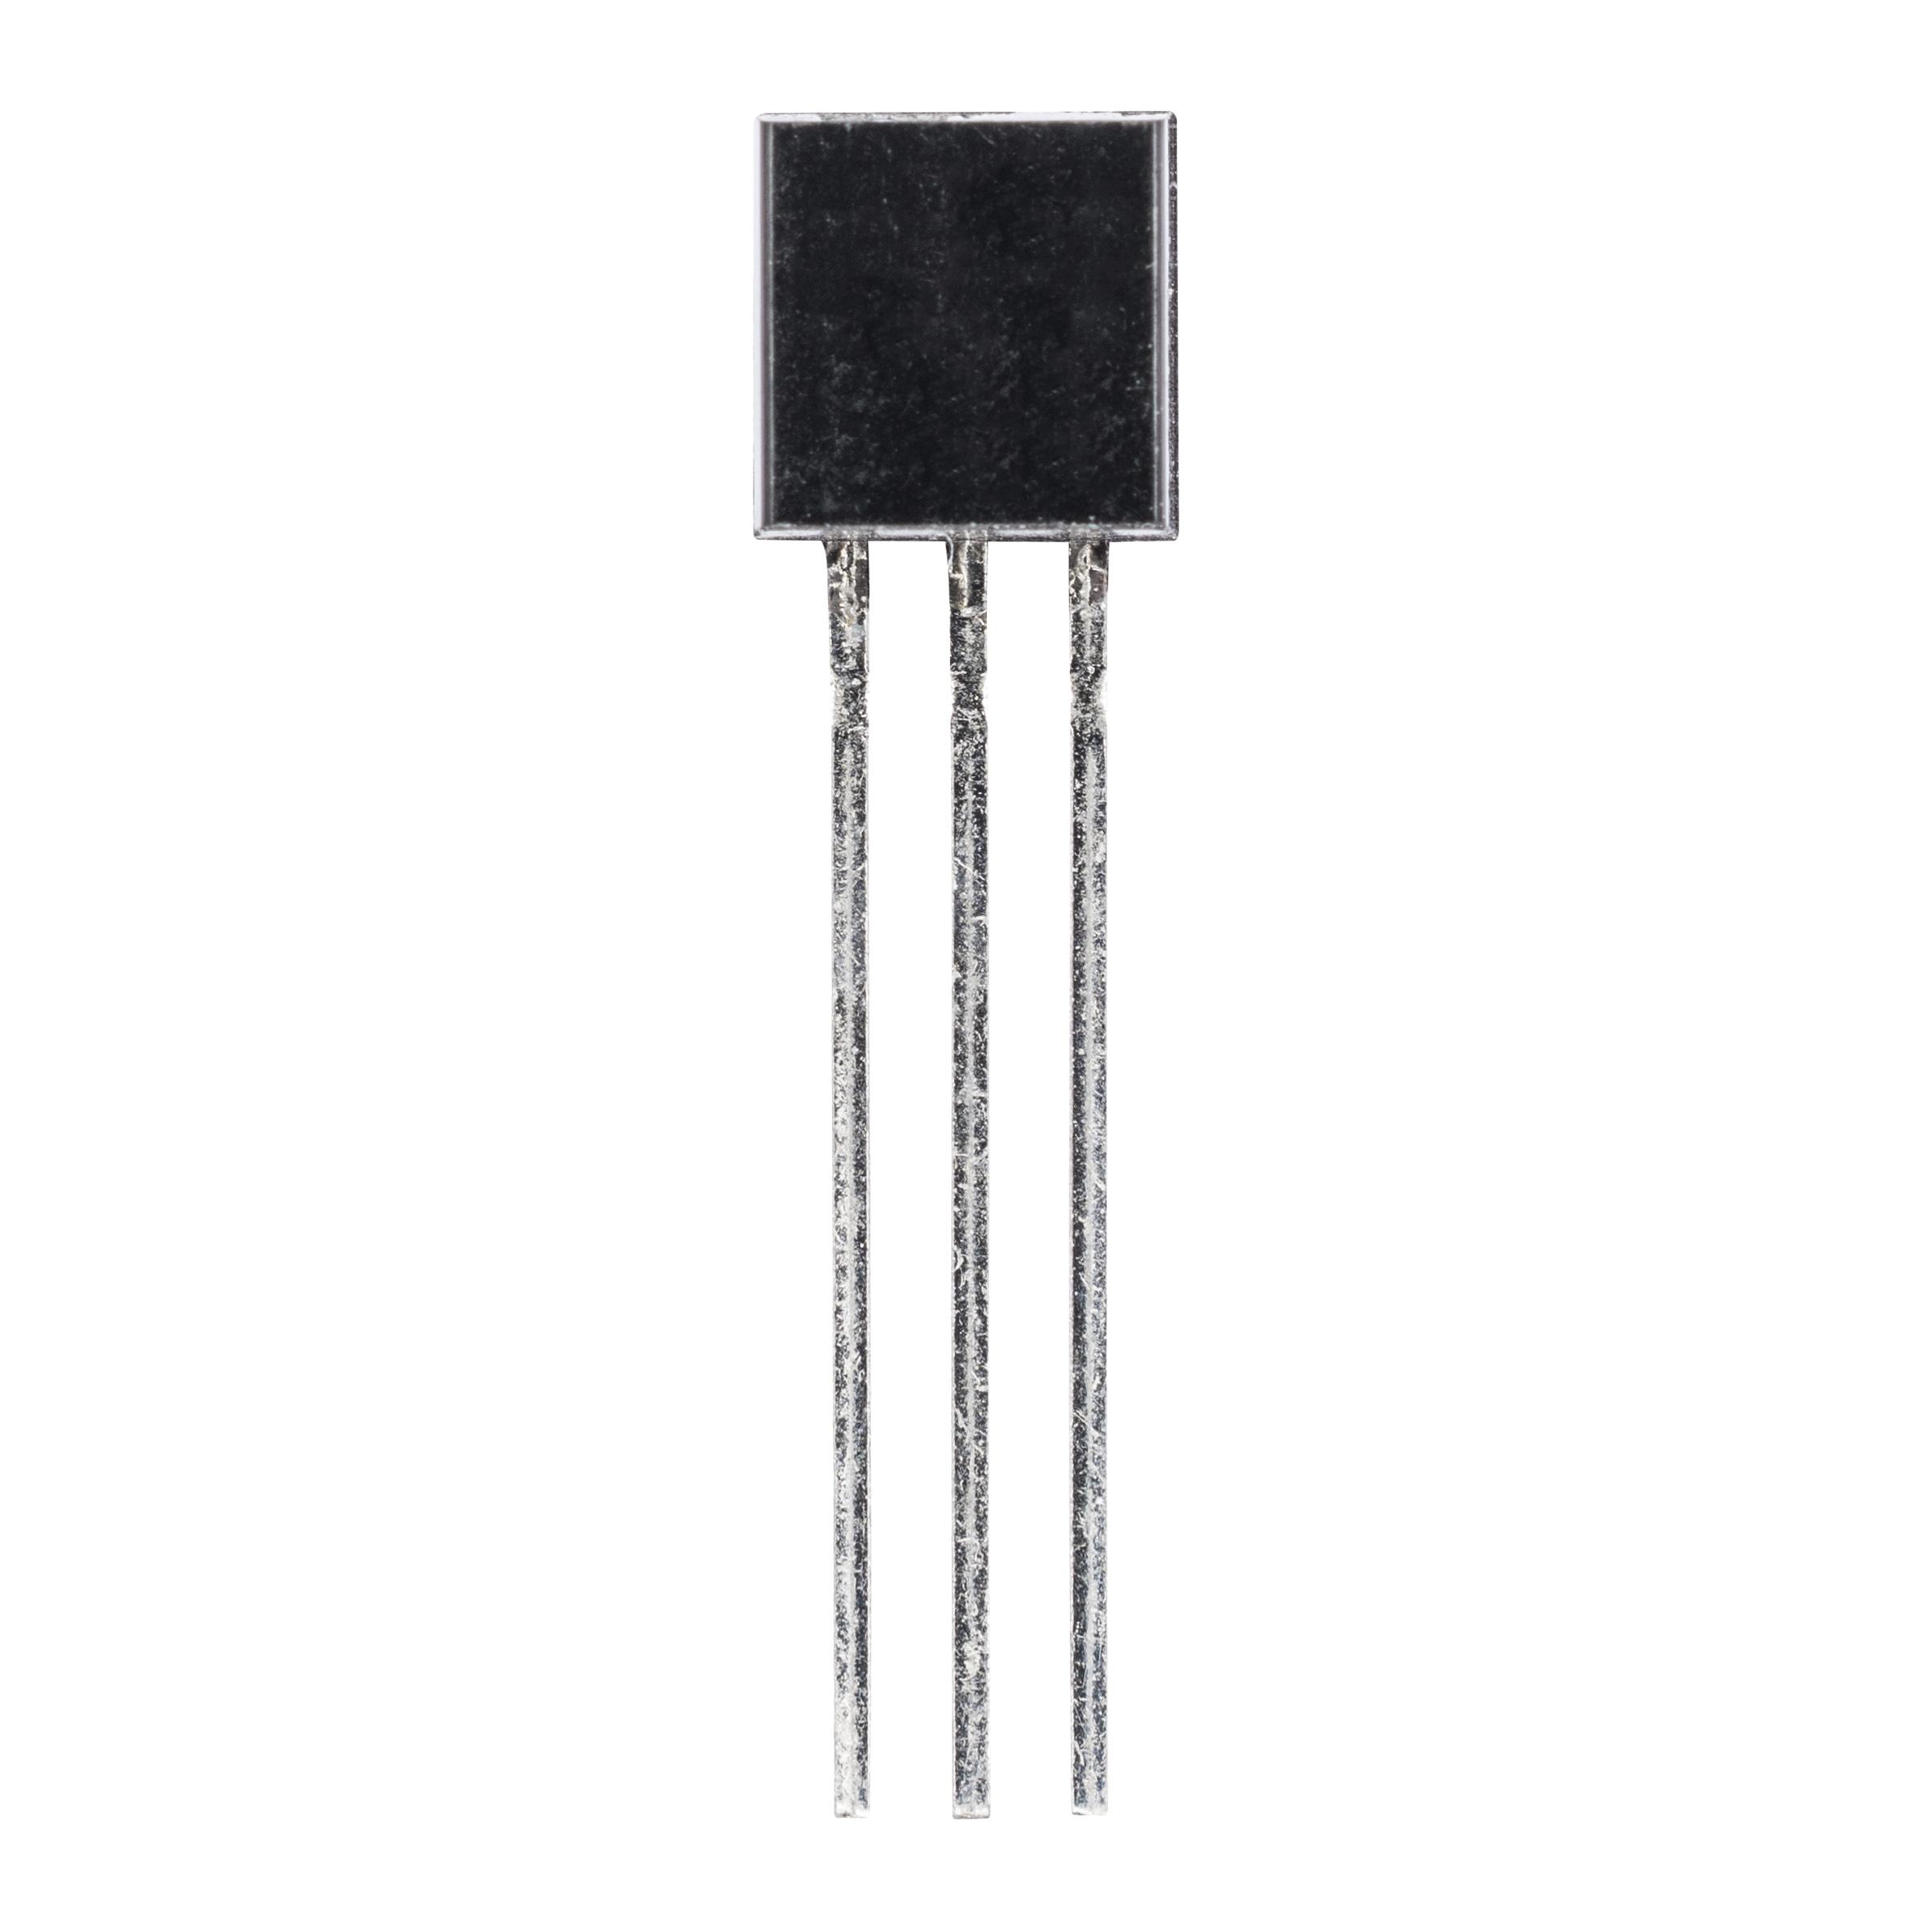 2N3904 (транзистор биполярный NPN)